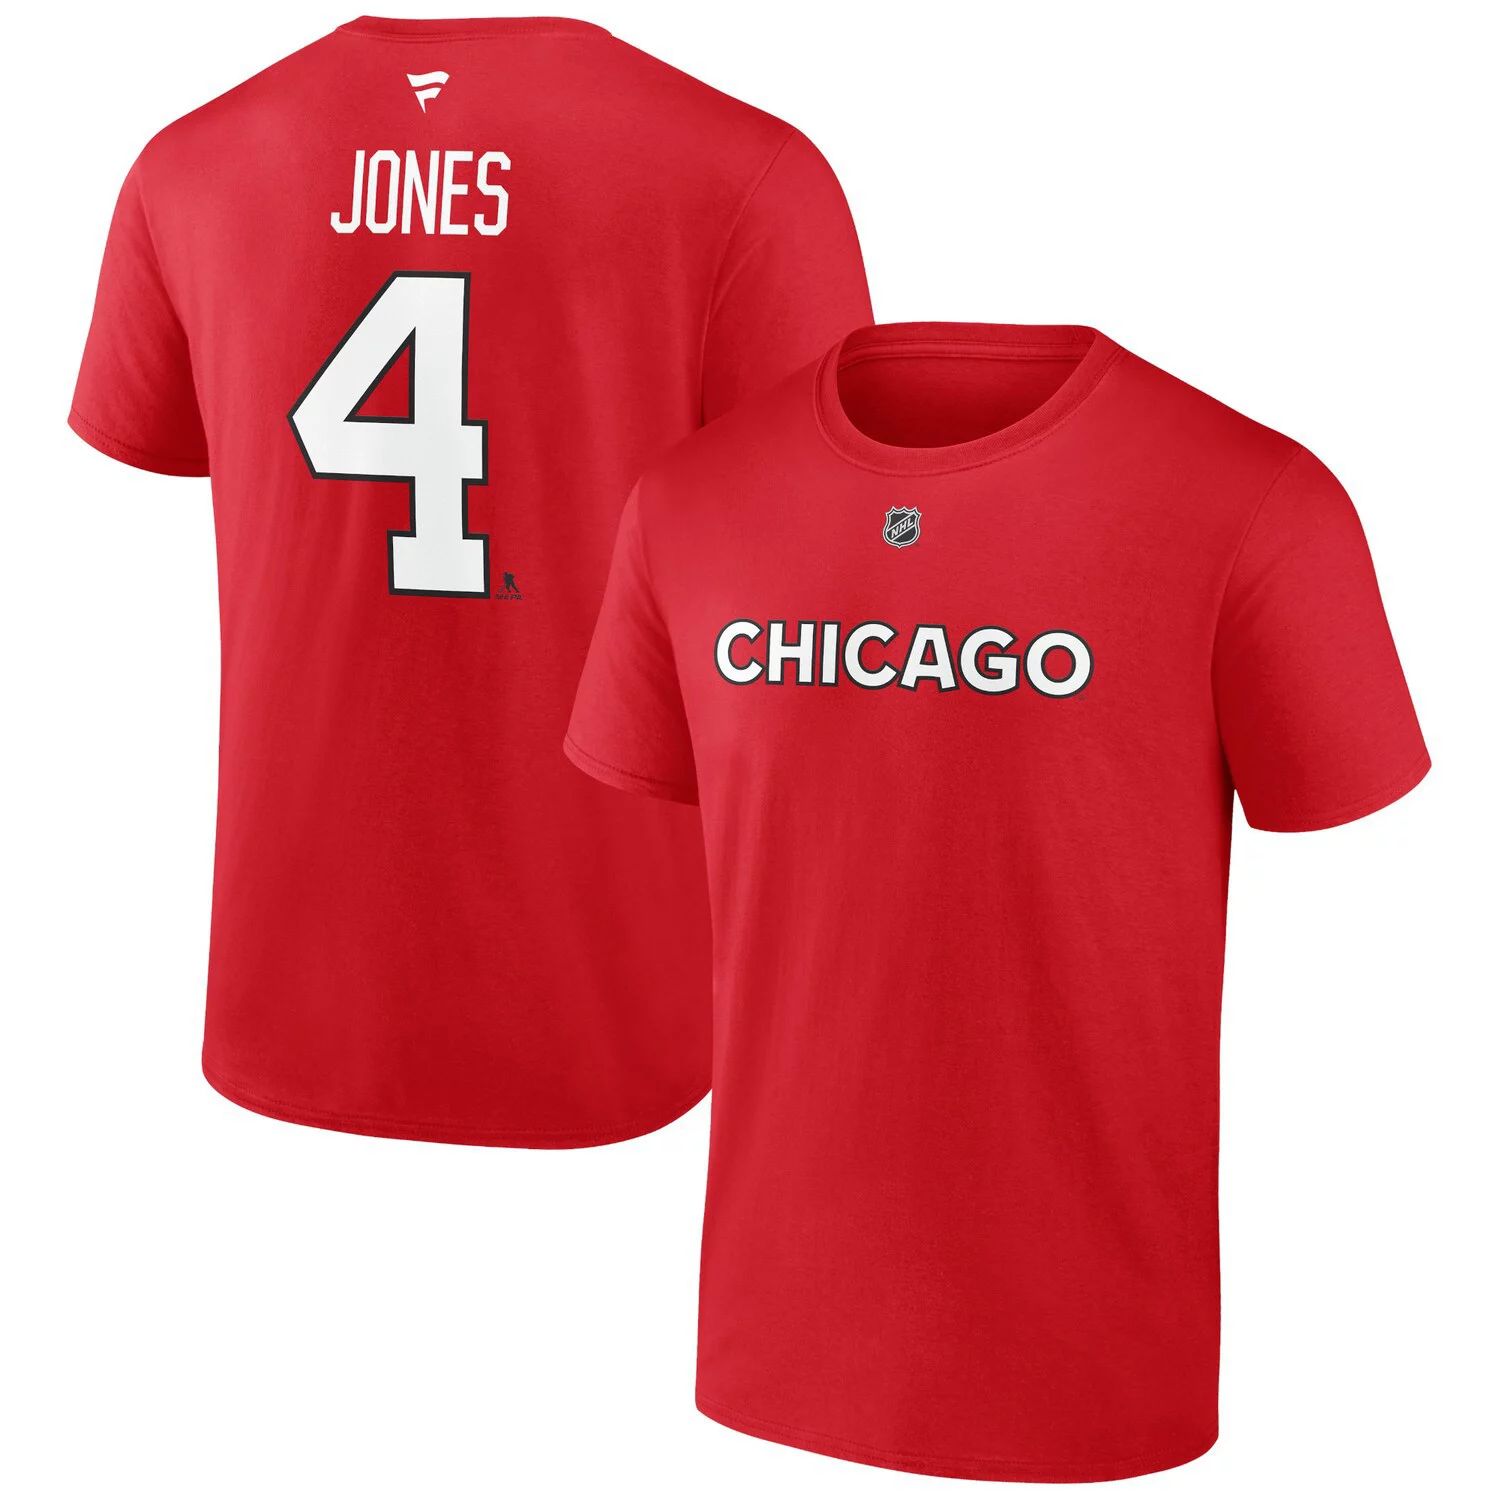 Мужская красная мужская футболка с именем и номером Seth Jones Chicago Blackhawks Special Edition 2.0 Fanatics